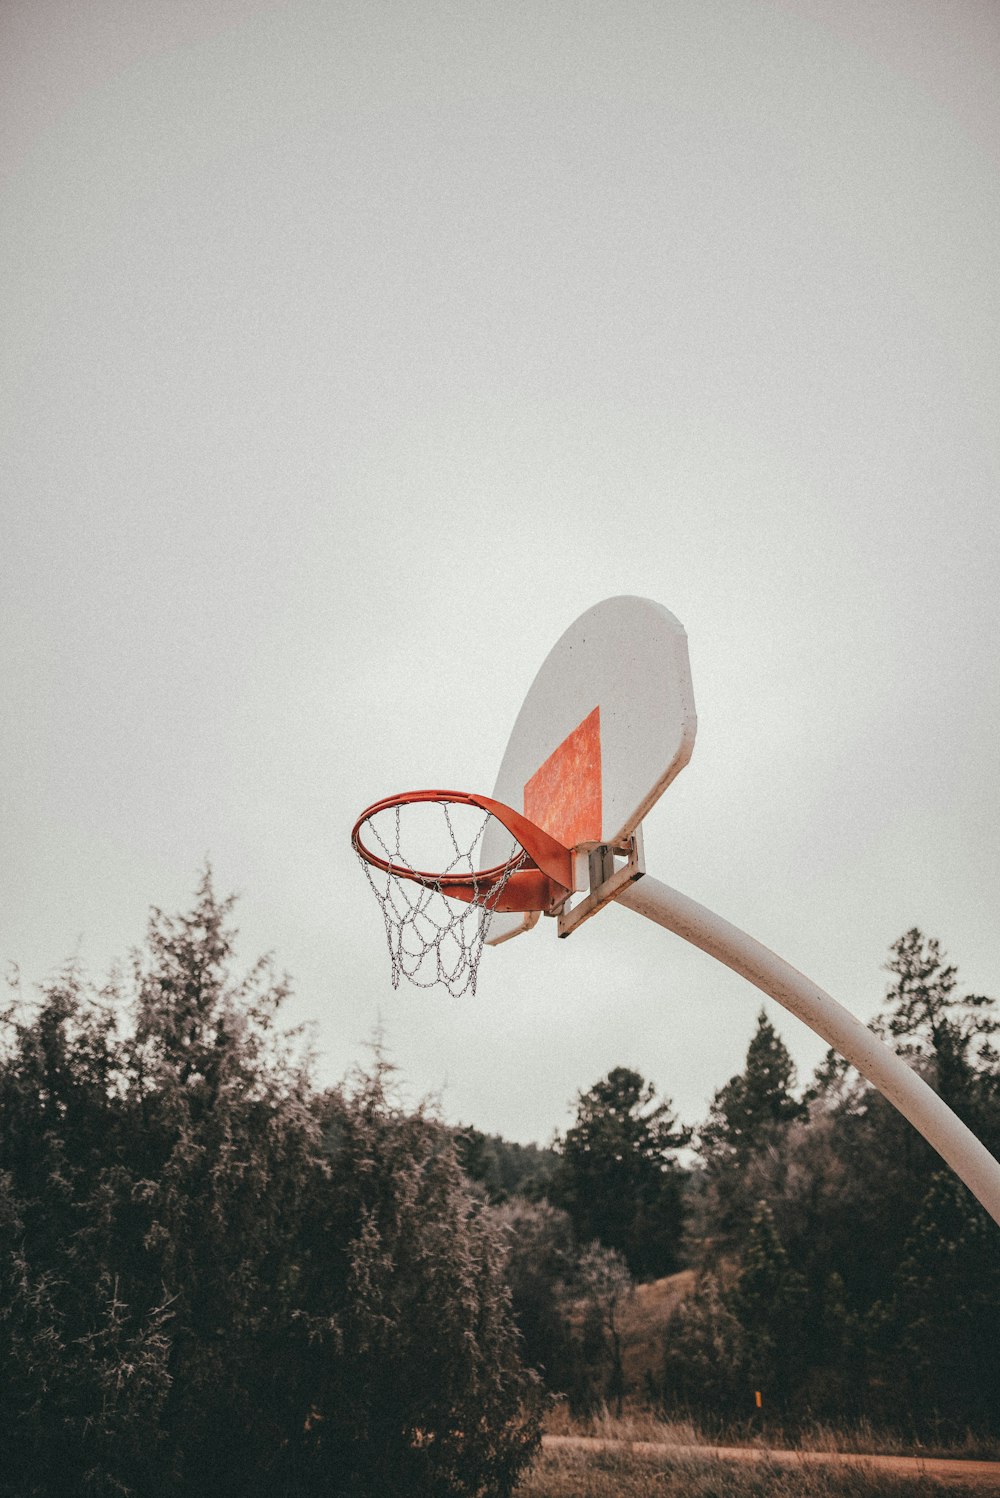 バスケットボールフープ付きバスケットボールフープの写真 Unsplashで見つけるグレーの無料写真